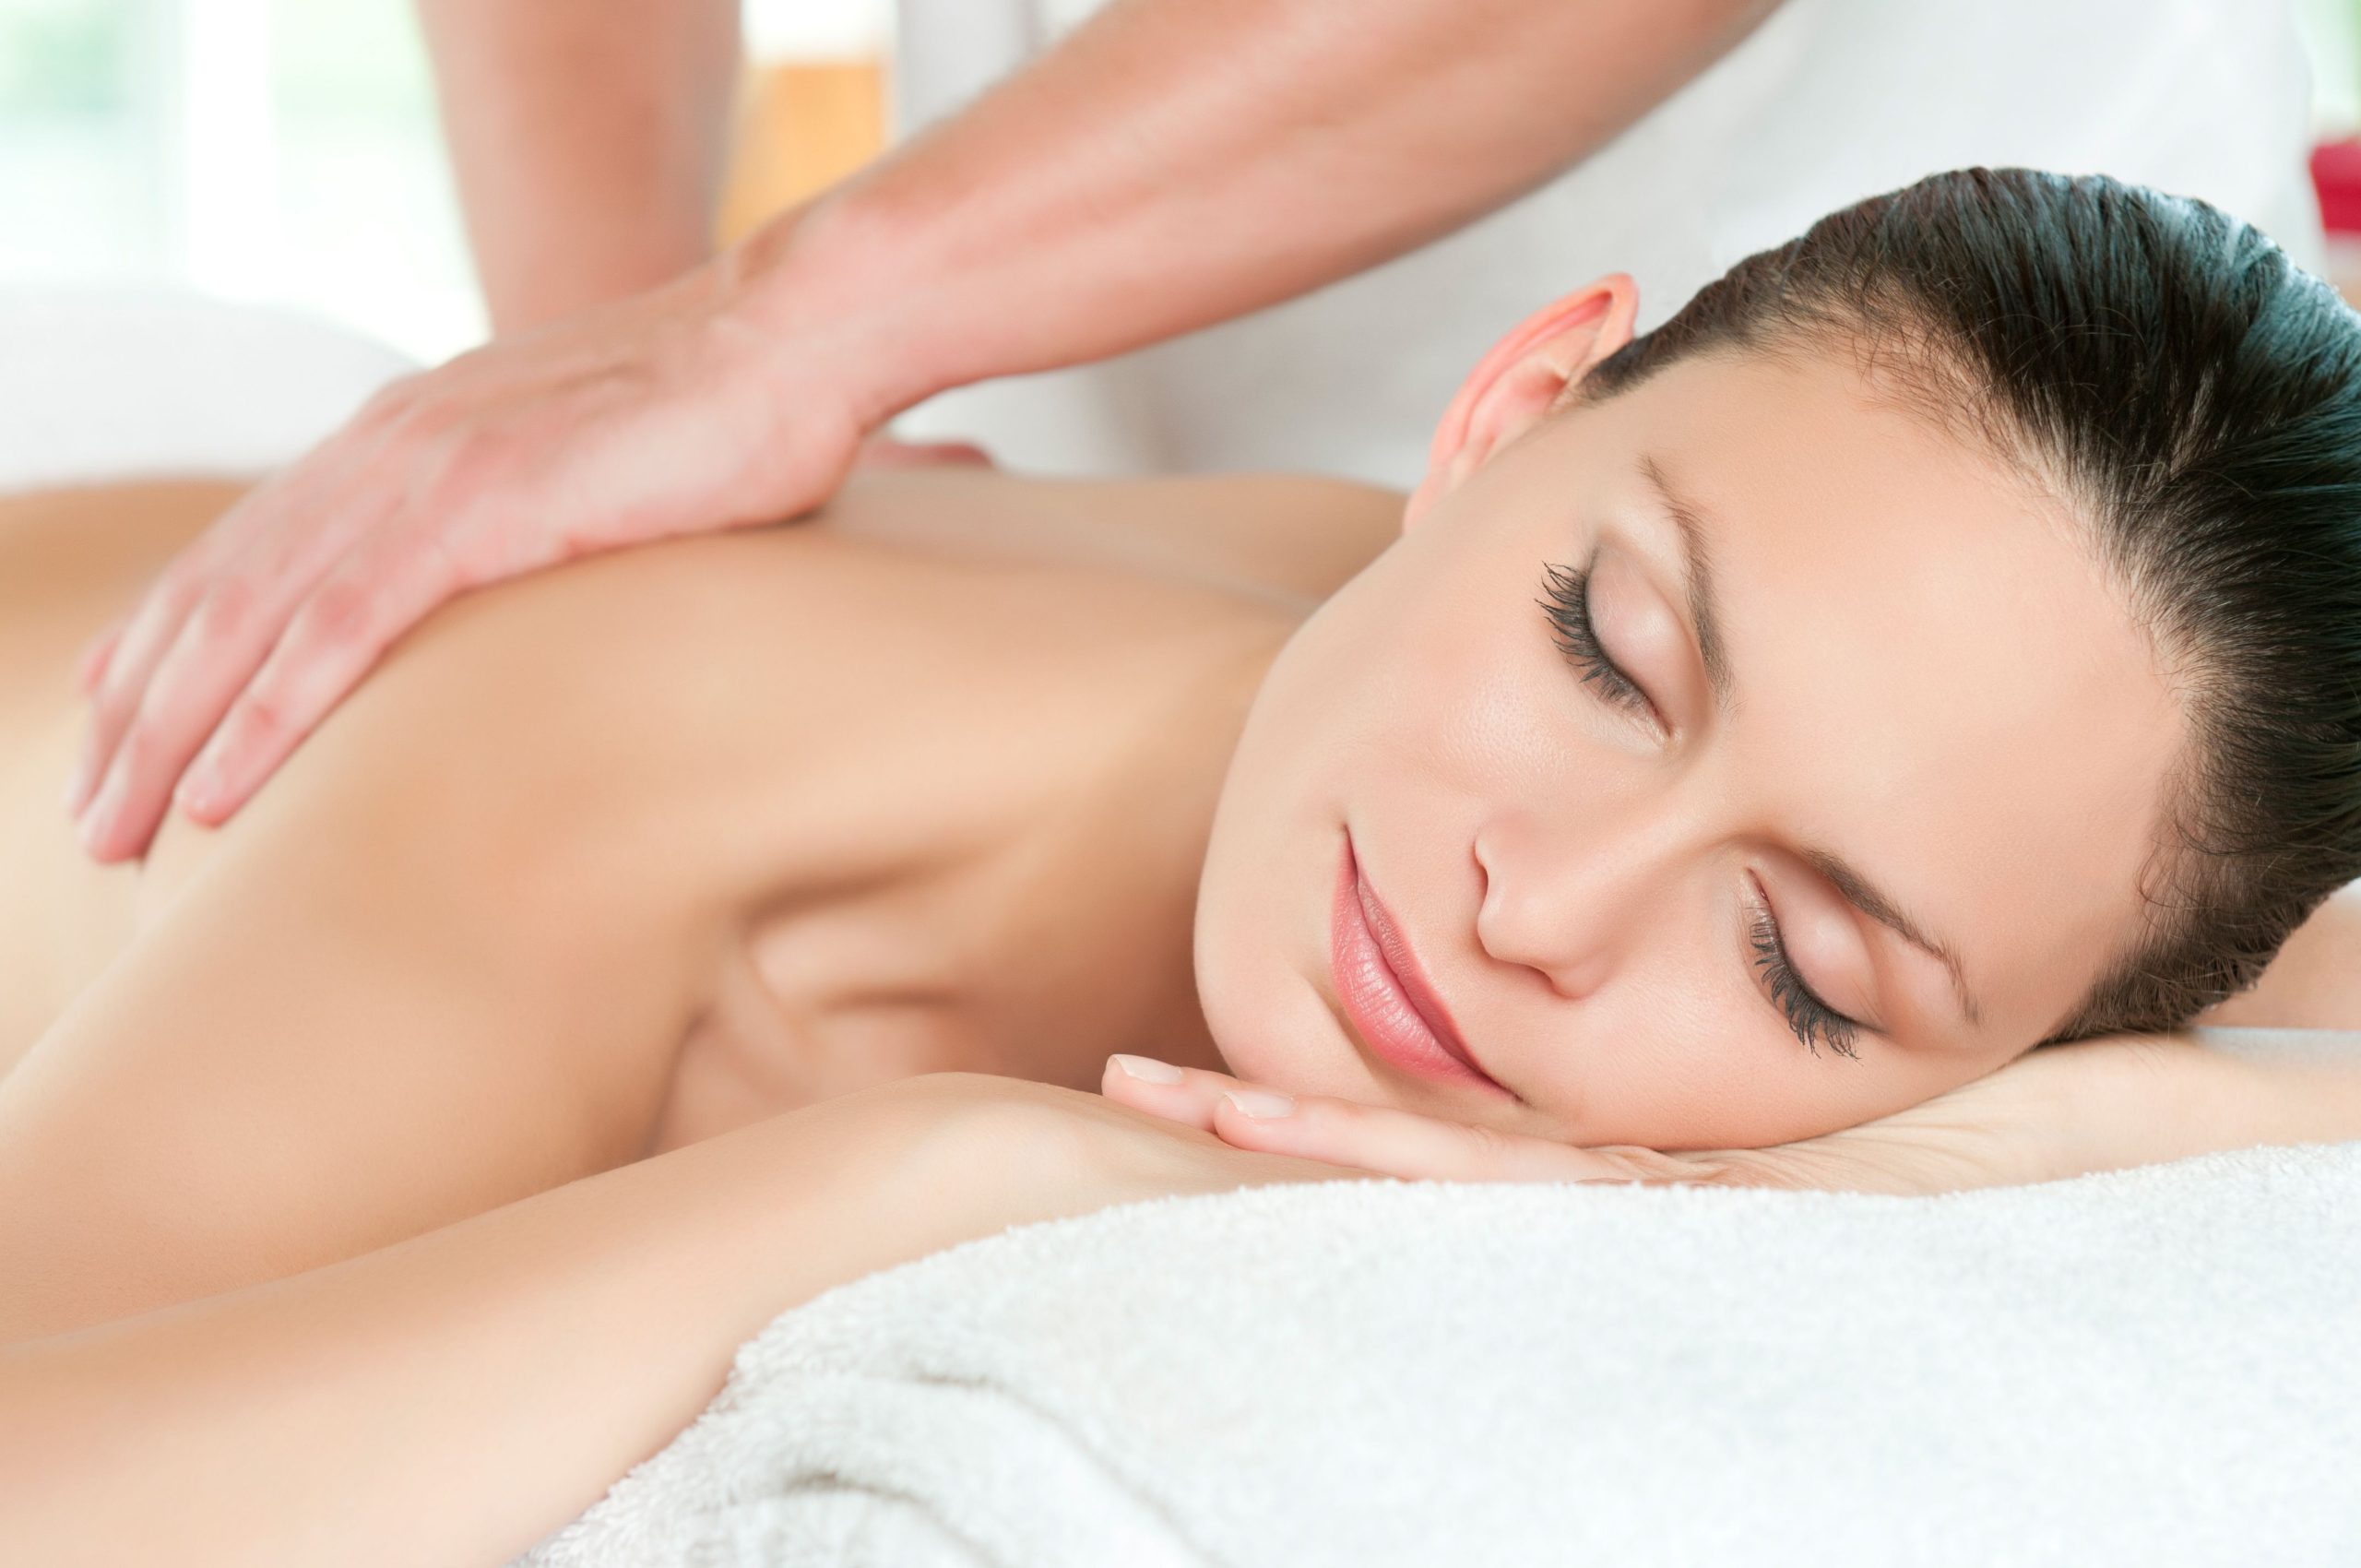 Relaxation Massage Therapist Near Lynnwood, WA